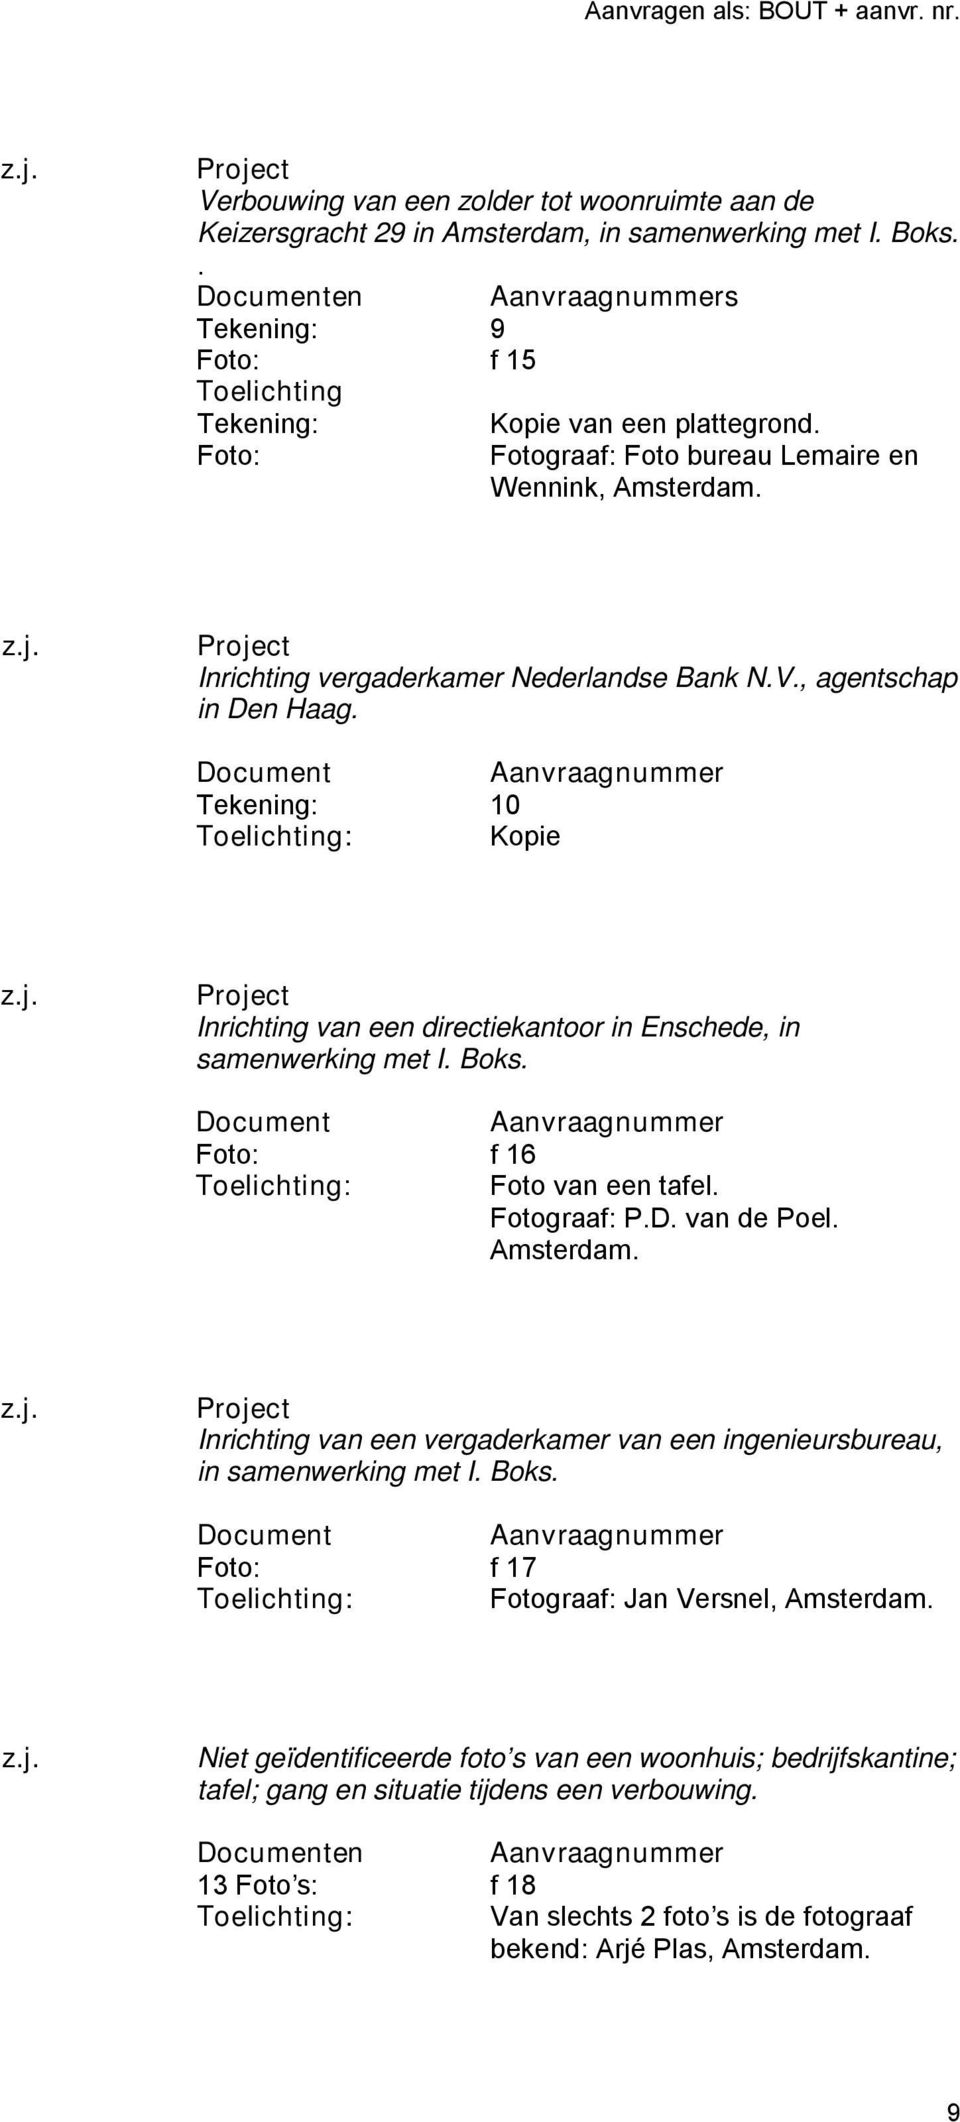 Tekening: 10 : Kopie Inrichting van een directiekantoor in Enschede, in samenwerking met I. Boks. Foto: f 16 : Foto van een tafel. Fotograaf: P.D. van de Poel.